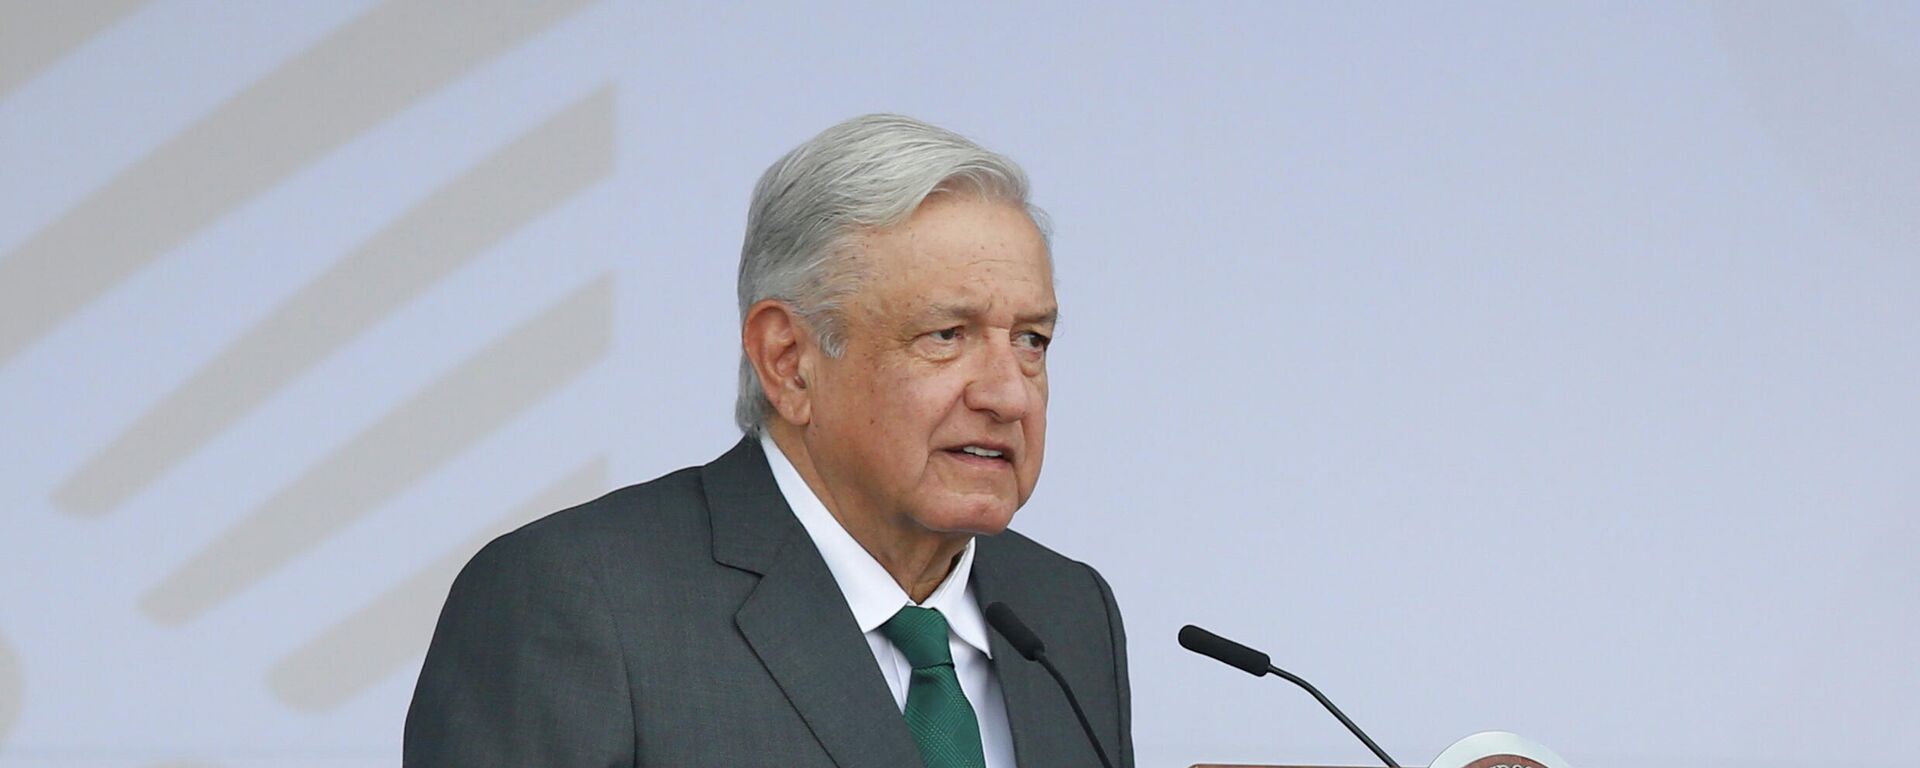 Andrés Manuel López Obrador, presidente de México - Sputnik Mundo, 1920, 21.09.2021